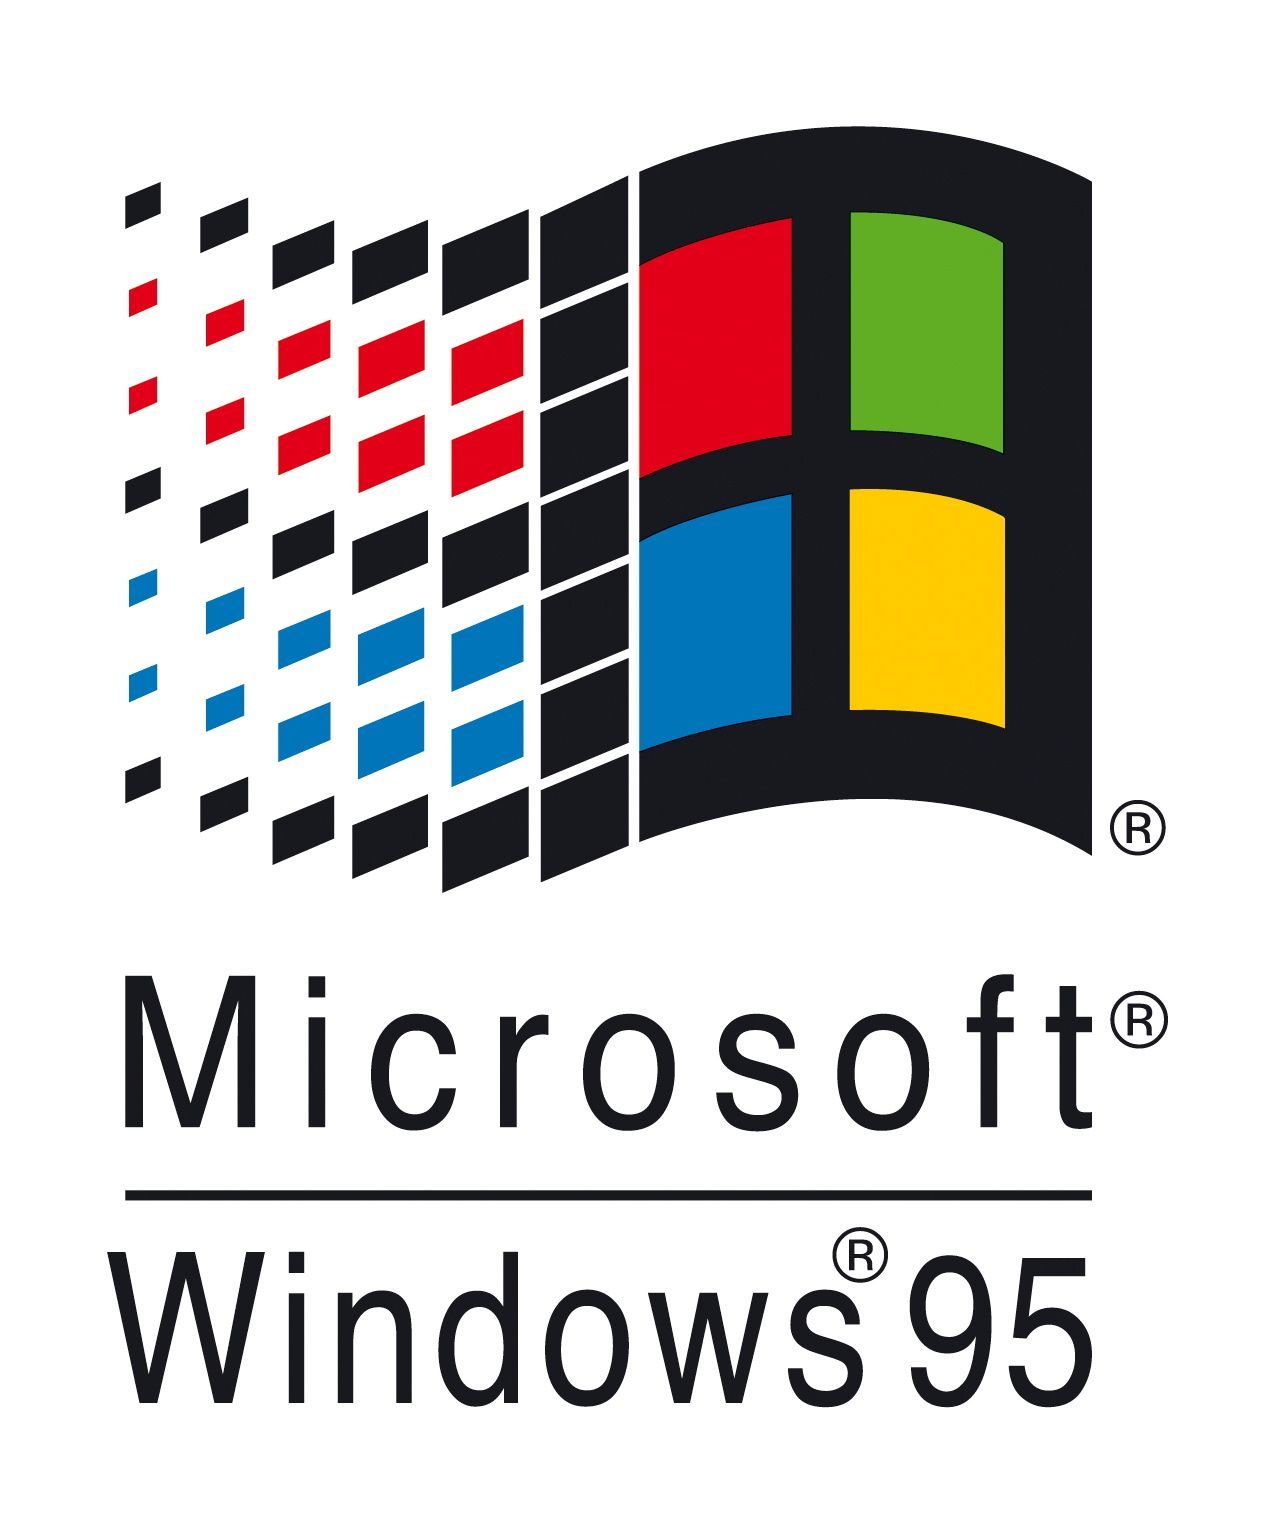 Mit dem Launch von Windows 1995 gelang Microsoft der Durchbruch. Das Logo wurde da schon bunter.